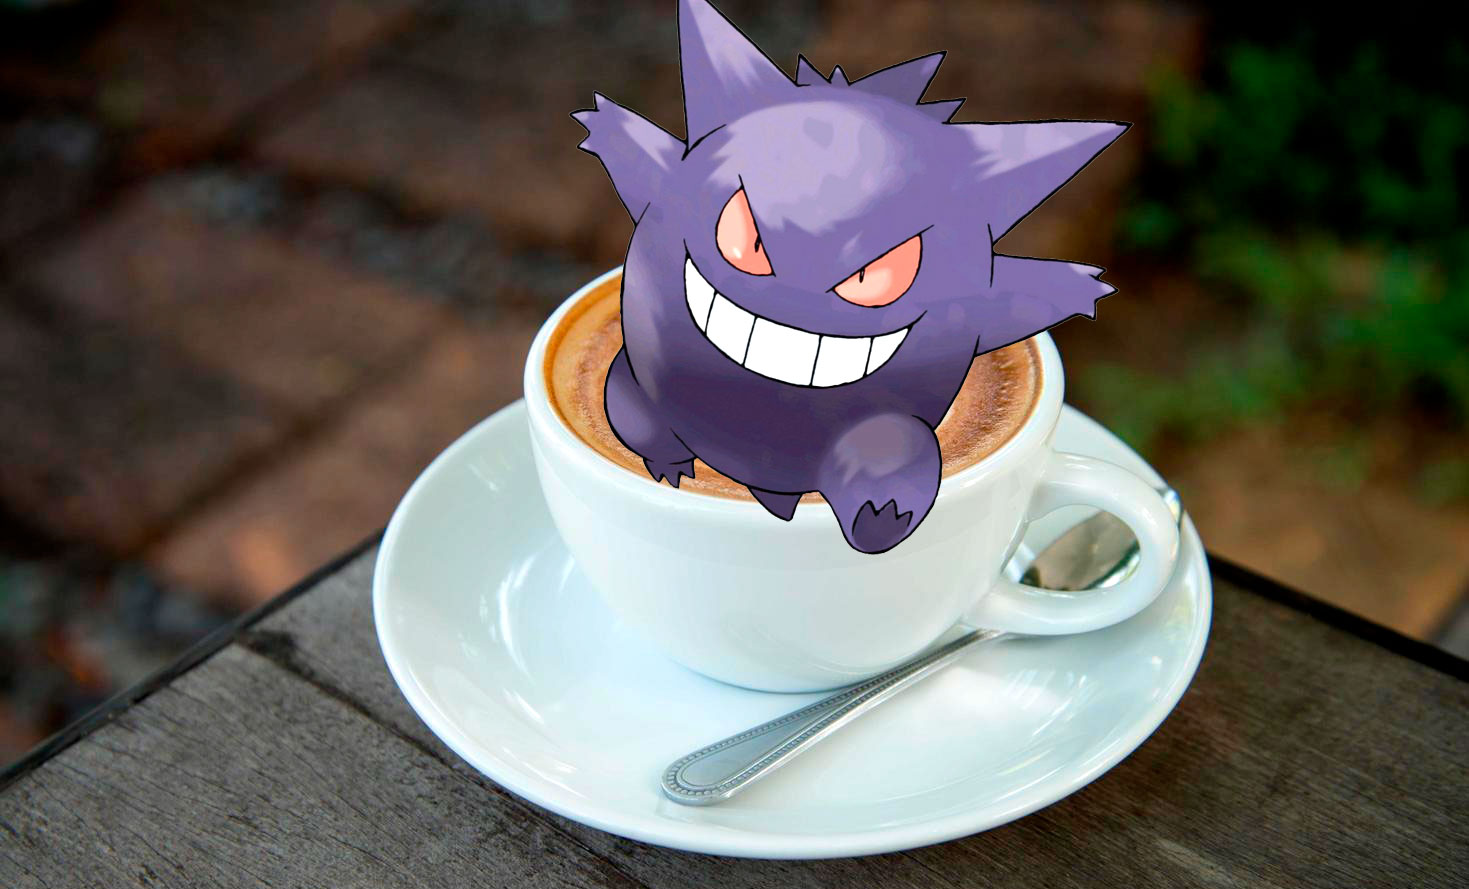 Artista cria café com leite do Pokémon, com Gengar pulando da xícara